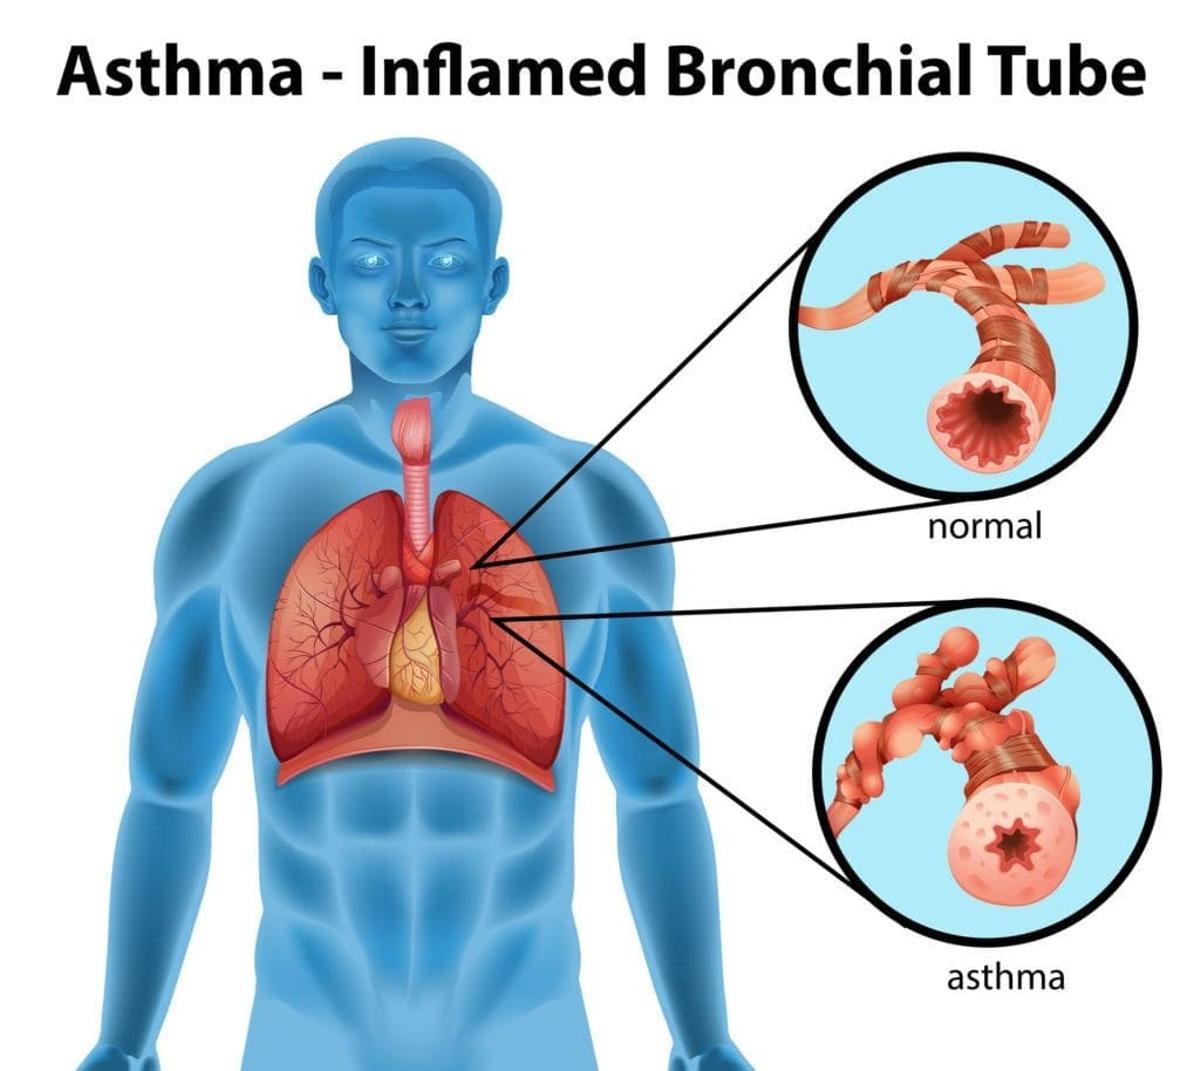 Inflamación de los bronquios por asma